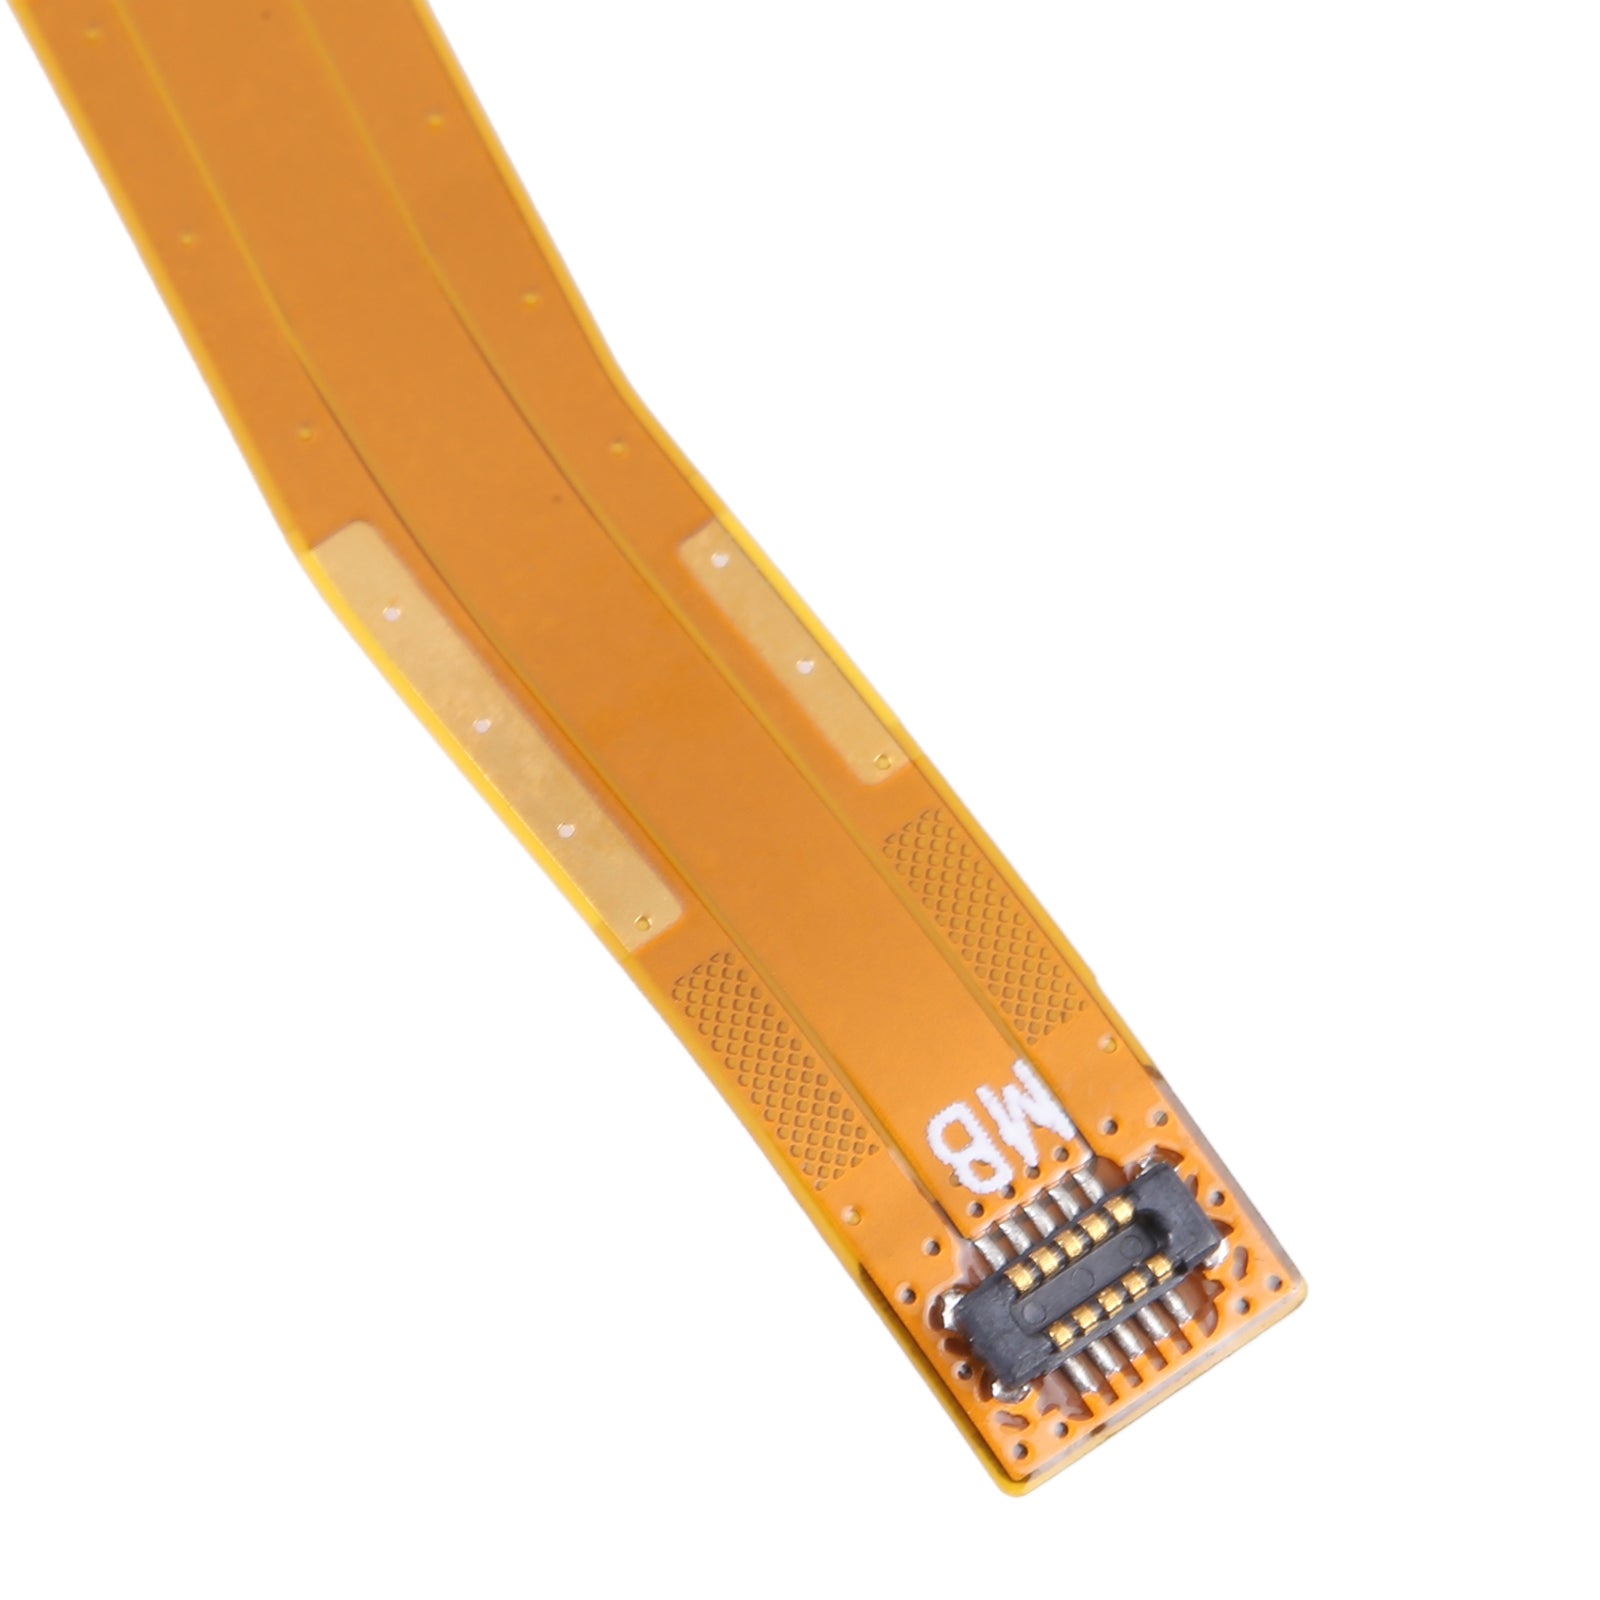 Lenovo M10 HD TB-X306 Board Connector Flex Cable